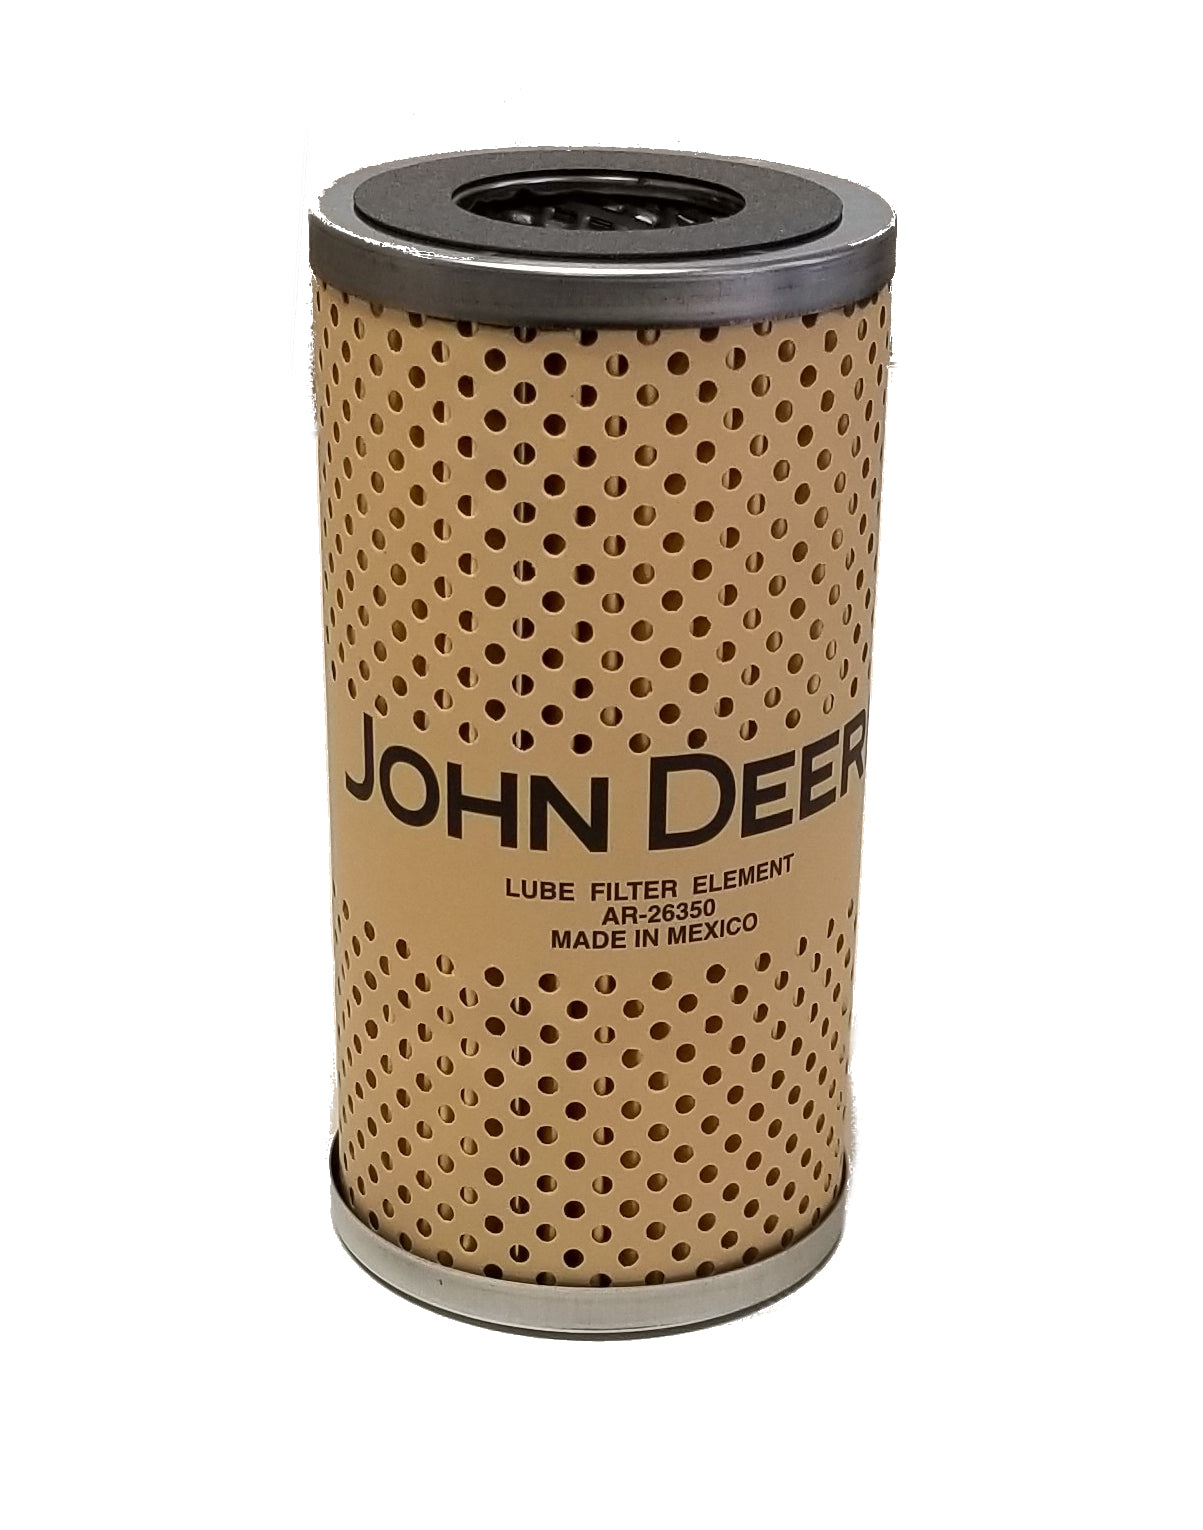 John Deere Original Equipment Filter Element - AR26350